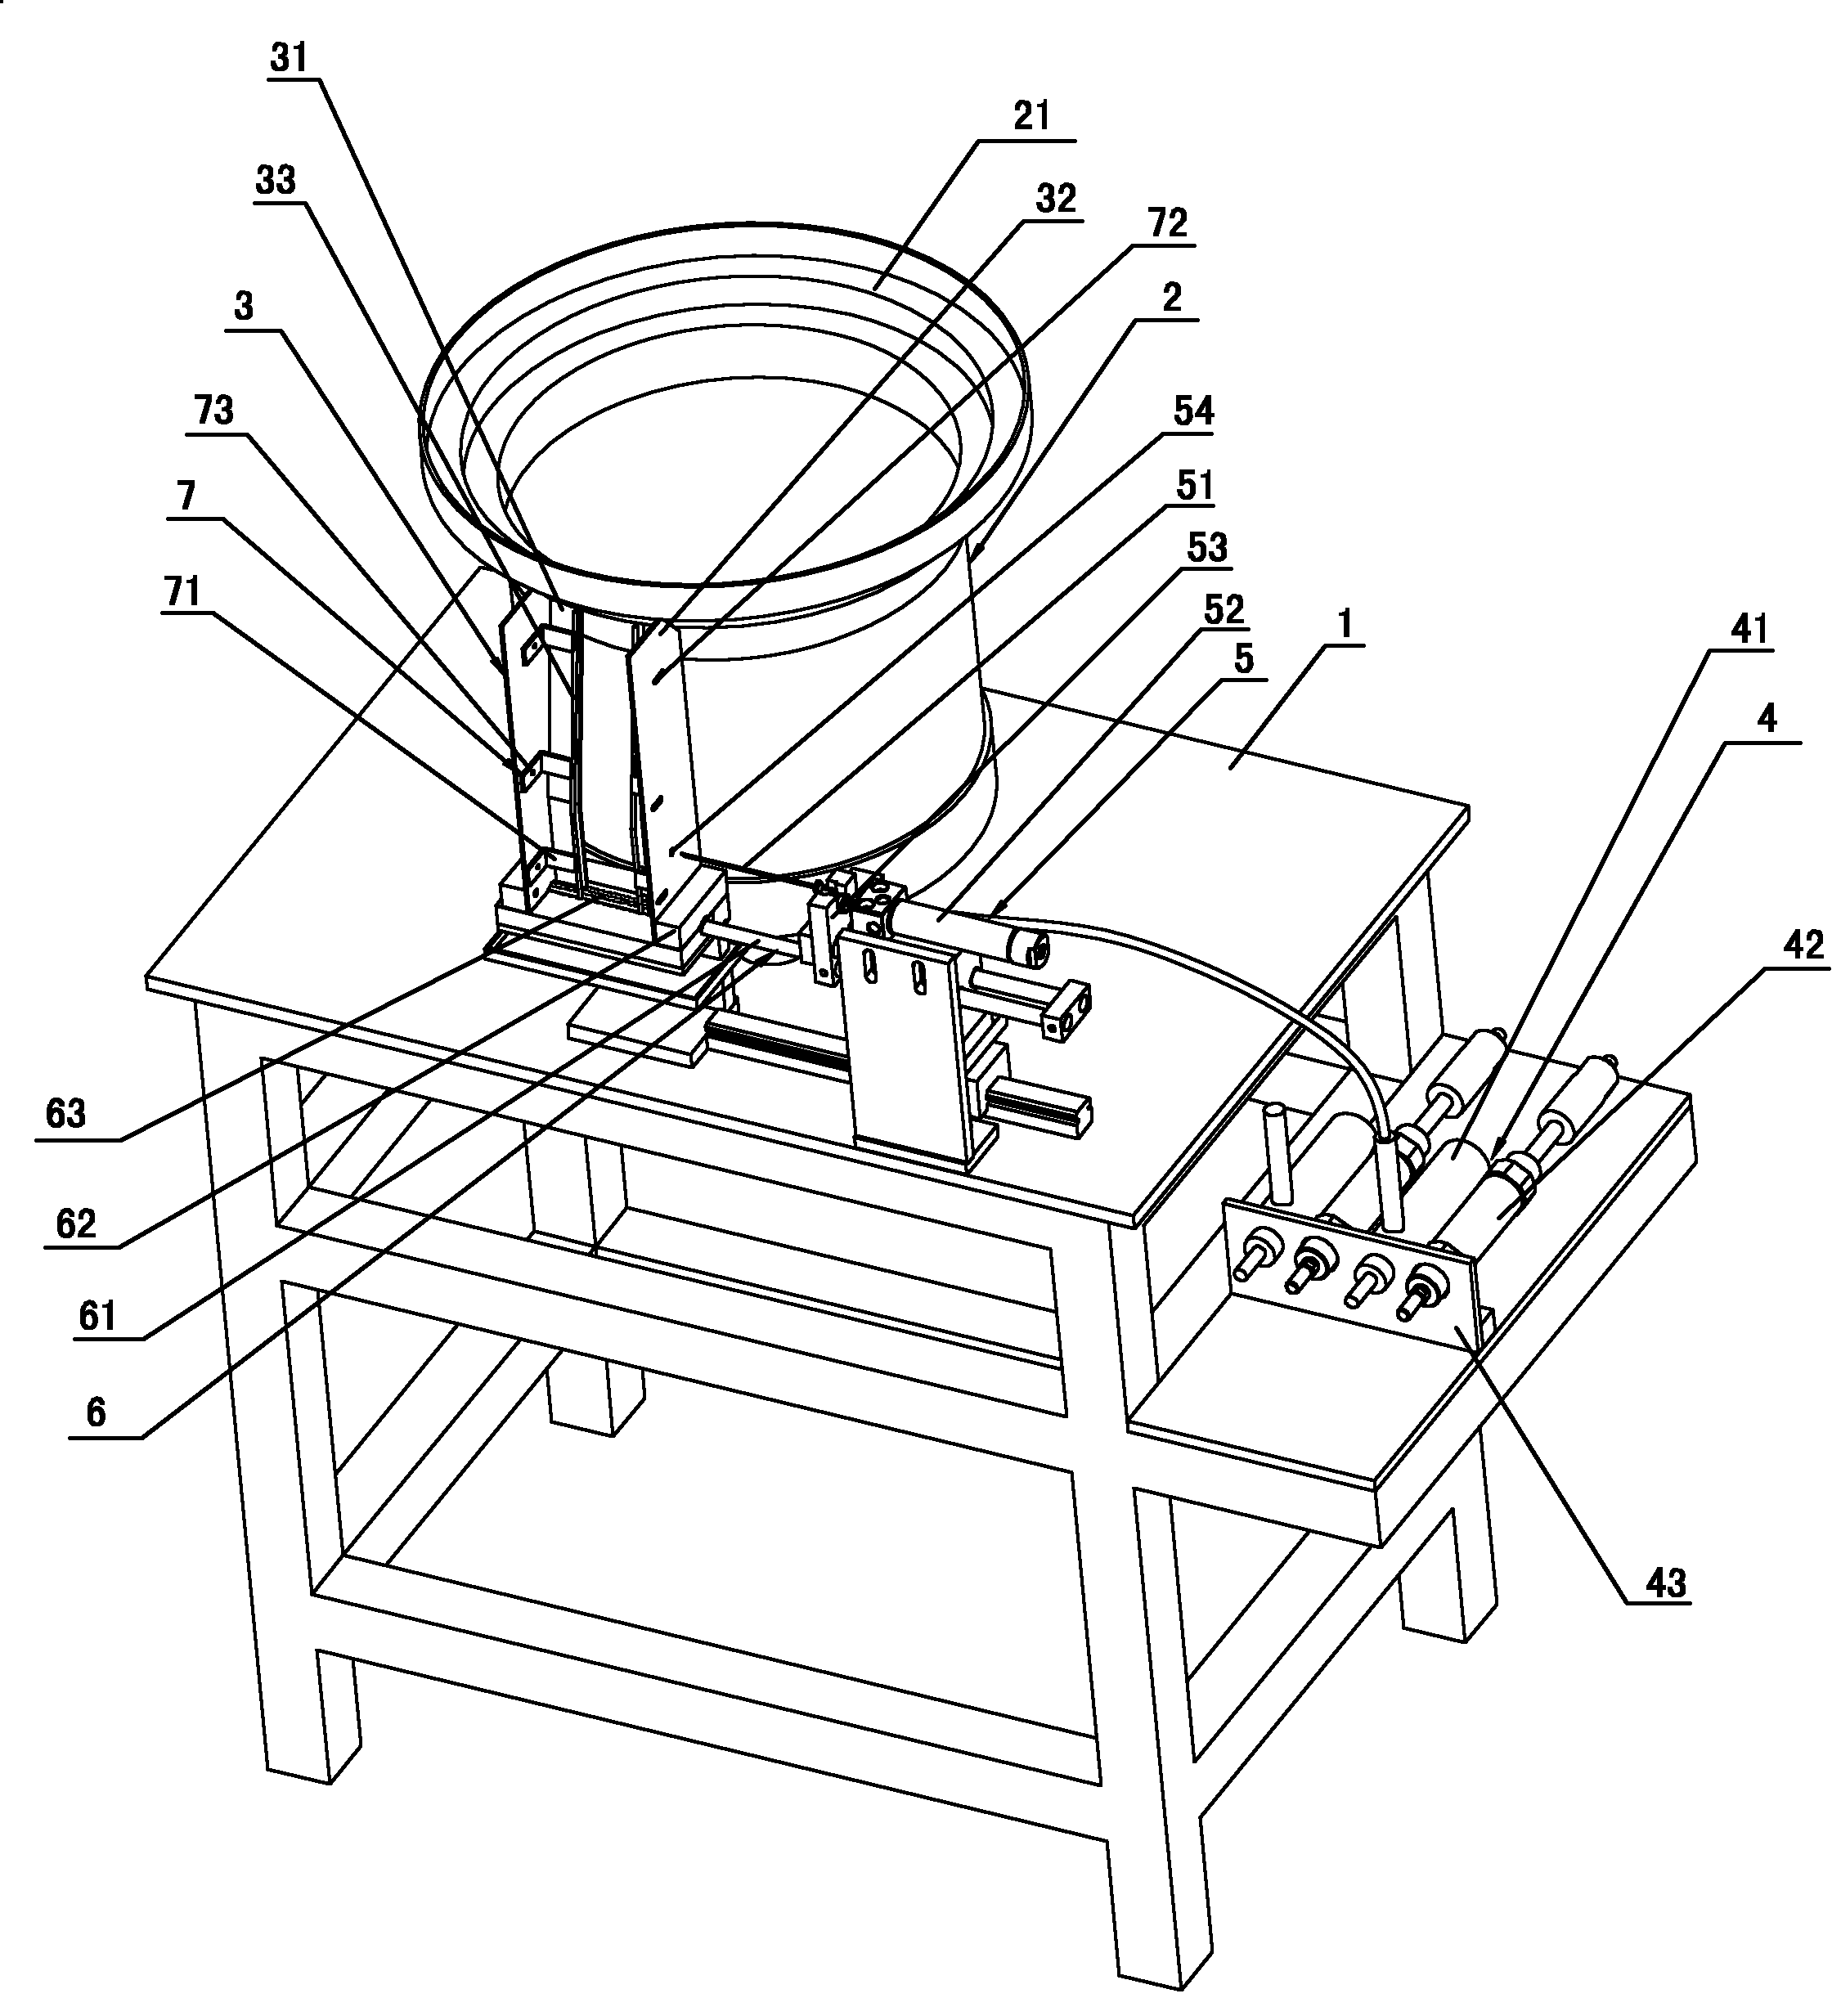 Reservoir ink-filling machine